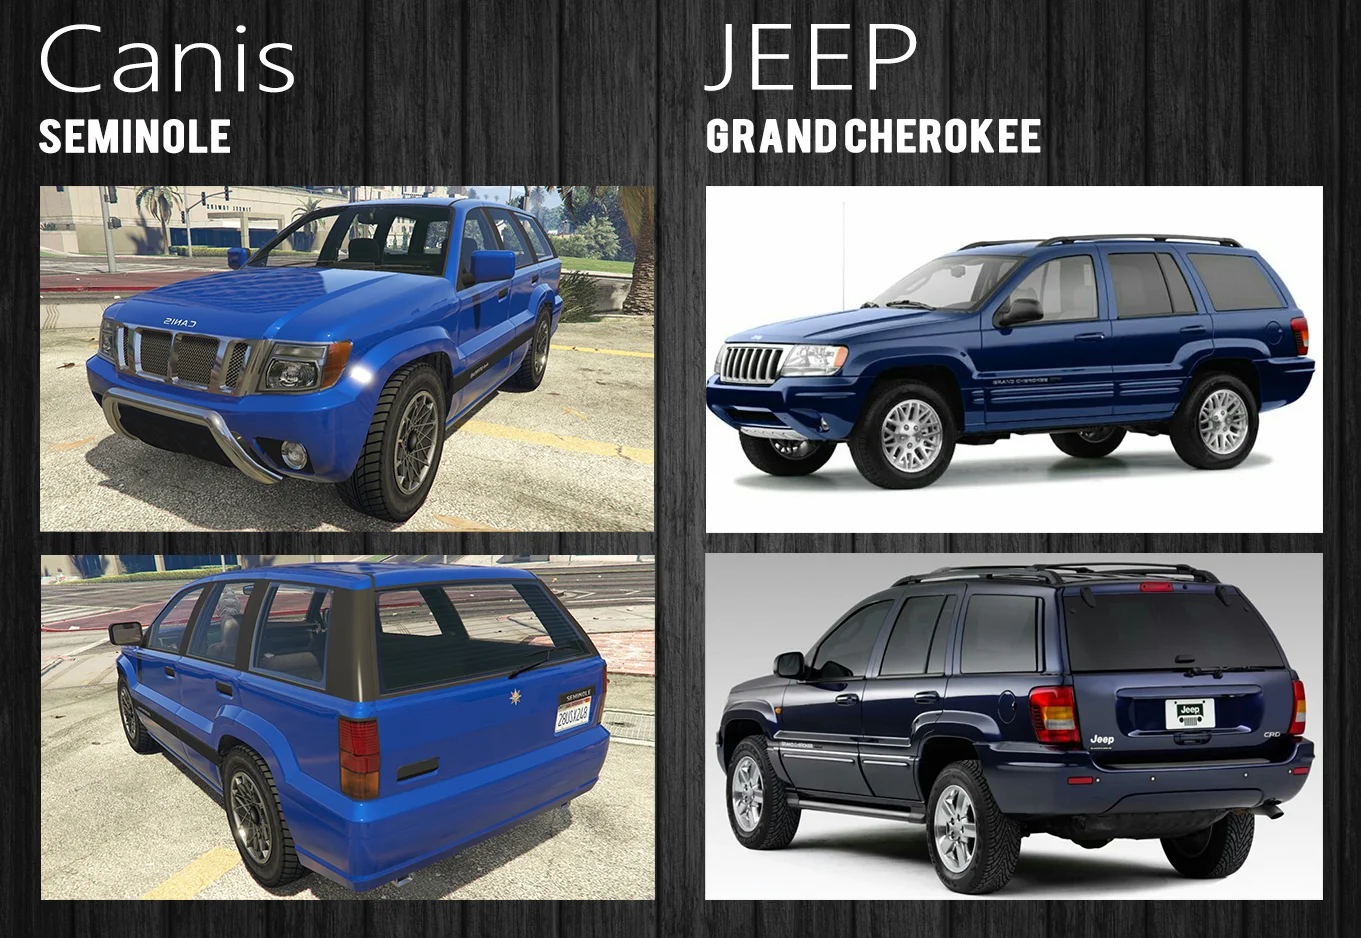 А вот о [Jeep Grand Cherokee](https://ru.motor1.com/news/274231/jeep-grand-cherokee-poluchil-bronirovannuyu-versiyu/) у нас знают многие, и даже «переделка» для игры не смогла исказить узнаваемый облик.